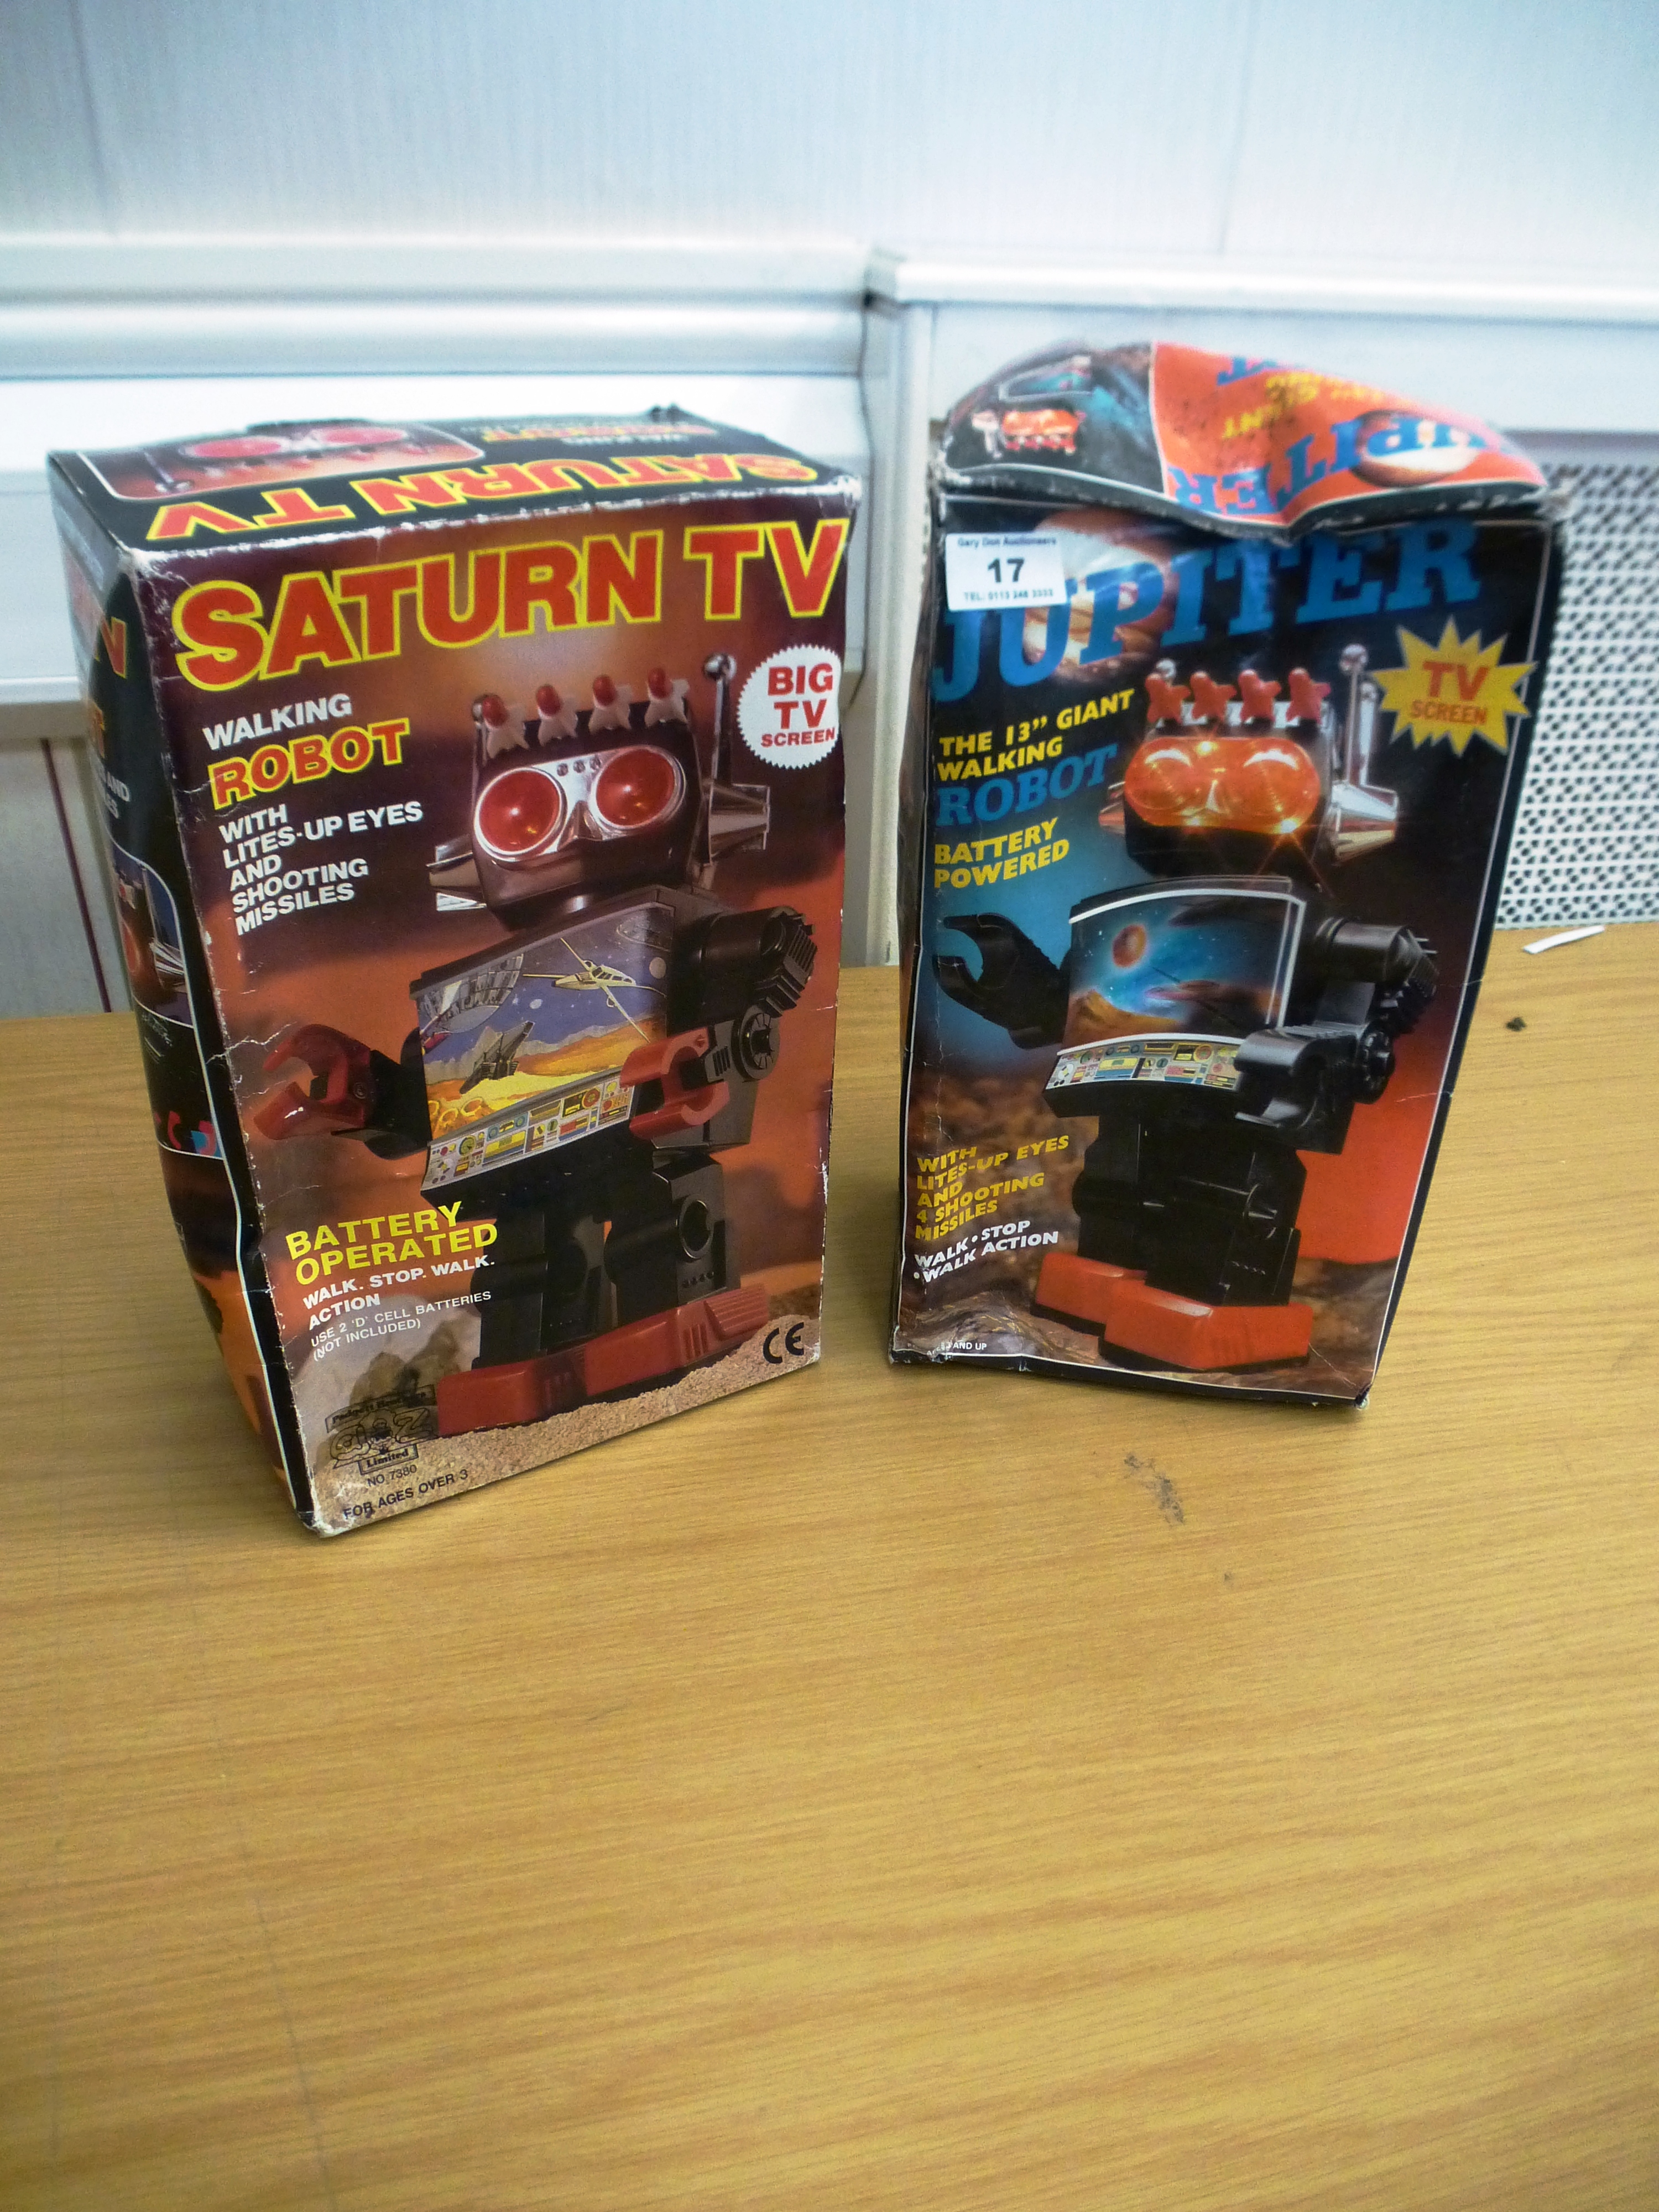 2 BOXED TV SCREEN ROBOTS - JUPITER AND SATURN